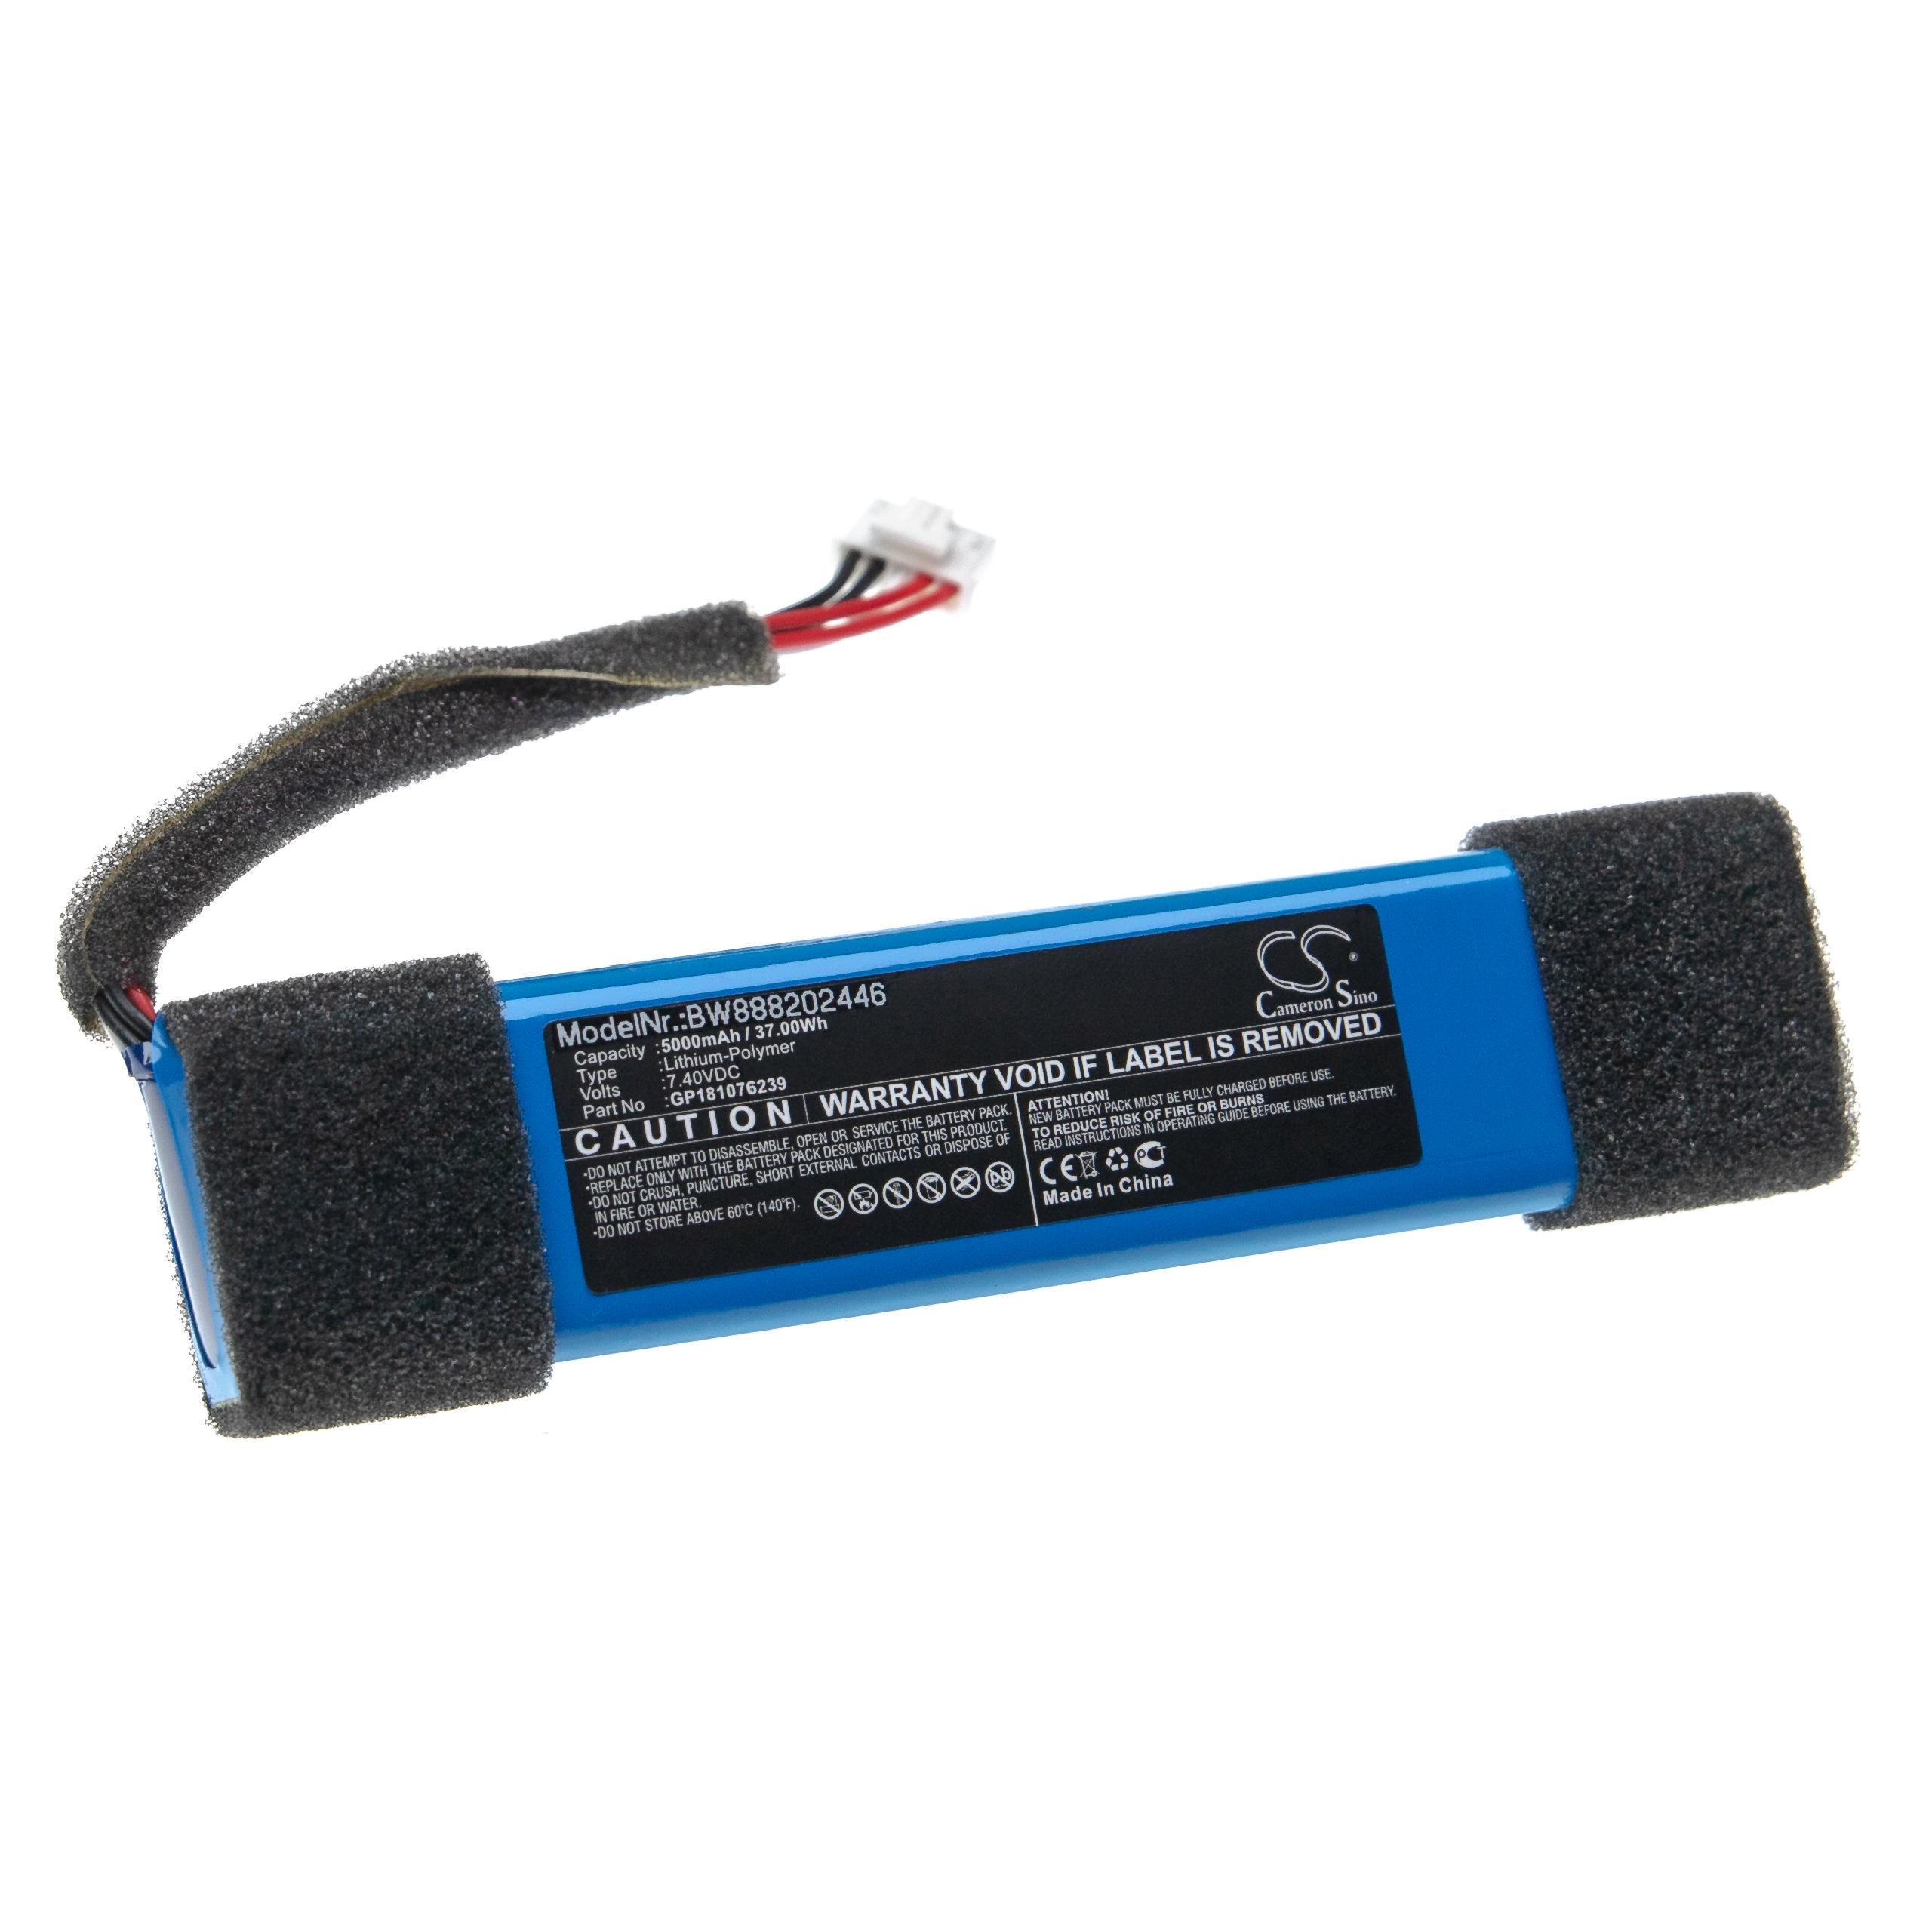  Battery replaces JBL GP181076239 for JBLLoudspeaker - Li-polymer 5000 mAh